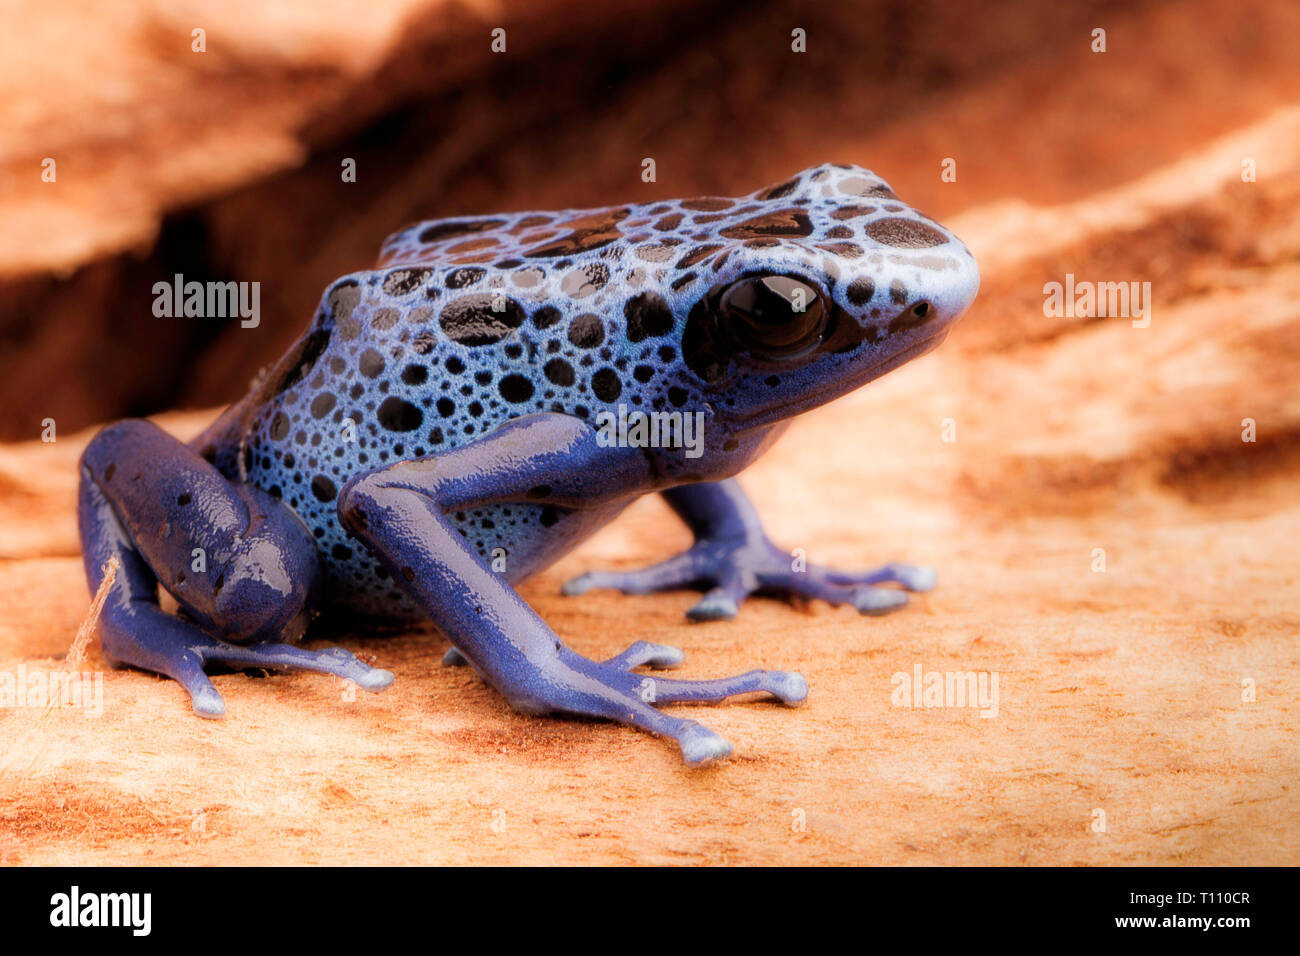 Azul y negro poison dart frog, Dendrobates Azureus. Un hermoso bosque venenoso animal en peligro de extinción. Pet en una selva tropical de anfibios Foto de stock